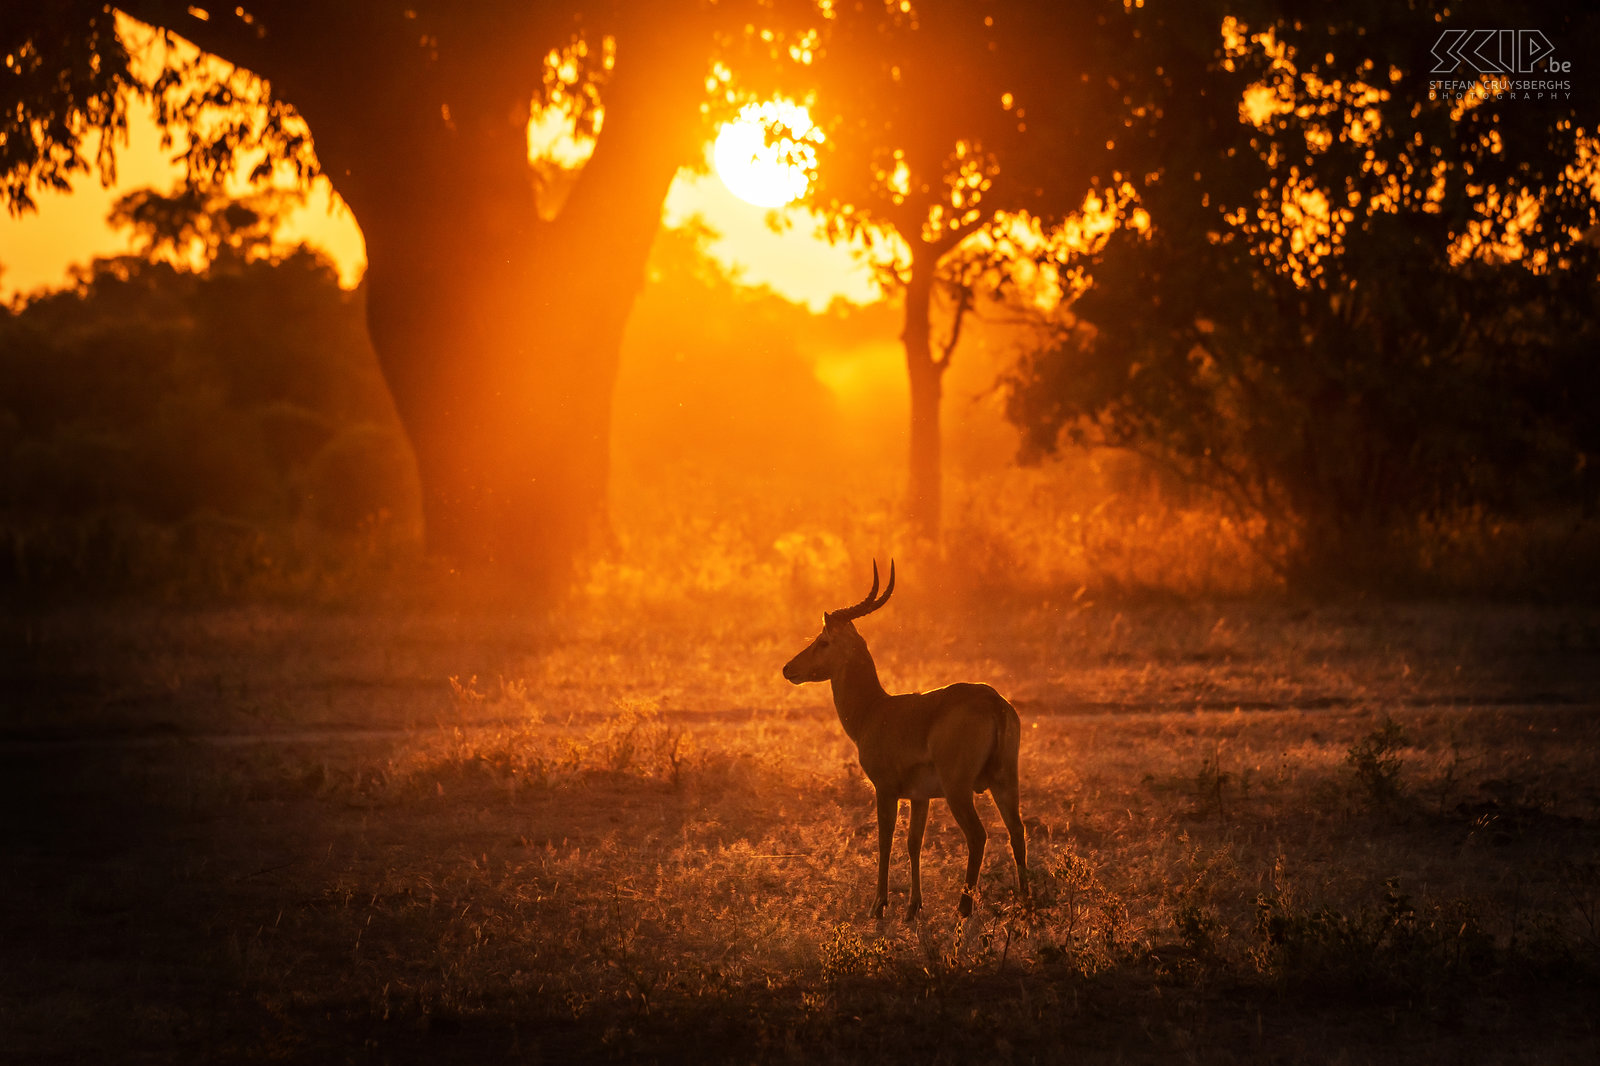 South Luangwa - Zonsondergang met puku Een puku met het gouden licht van de zonsondergang in het prachtige South Luangwa National Park in Zambia. De puku is een veelvoorkomende middelgrote antiloop. De mannetjes hebben hun eigen territorium en trachten een kudde van vrouwtjes binnen hun grondgebied te houden. Stefan Cruysberghs